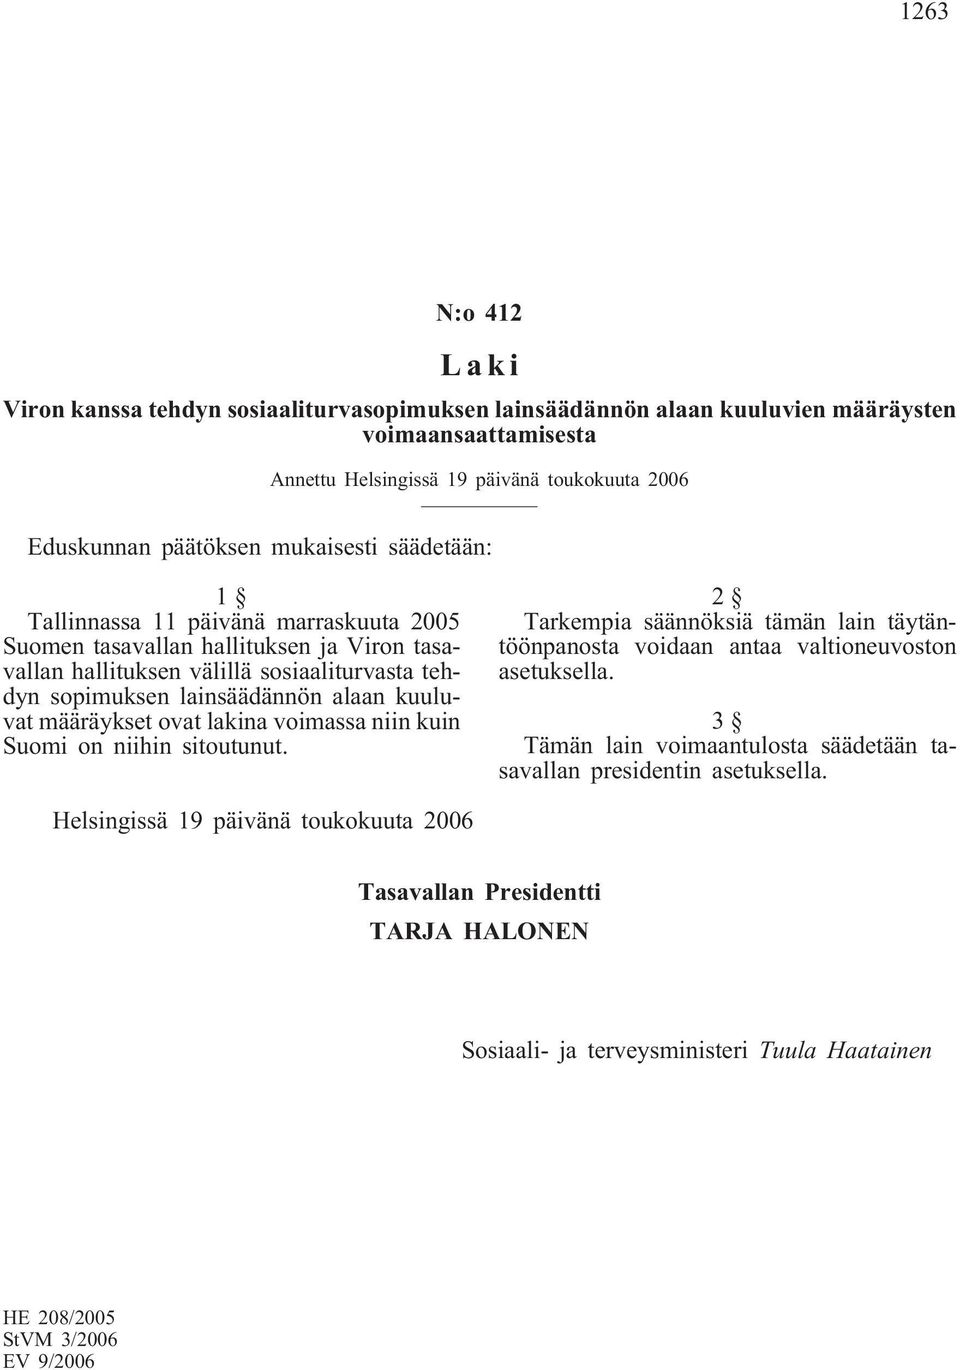 lainsäädännön alaan kuuluvat määräykset ovat lakina voimassa niin kuin Suomi on niihin sitoutunut.